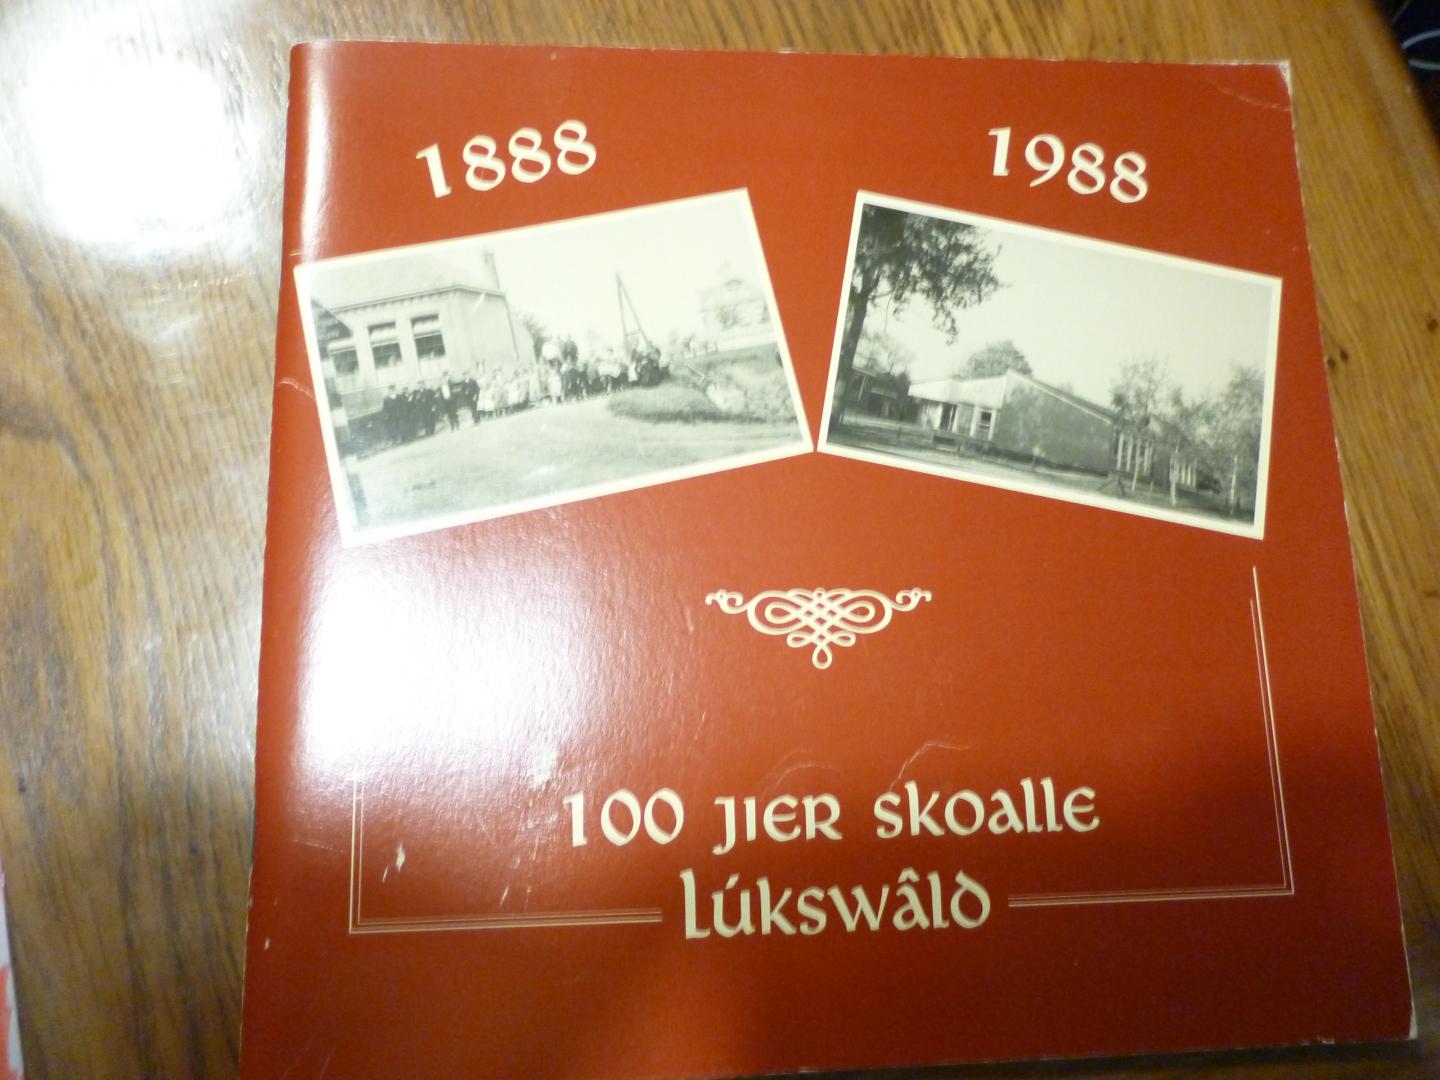  - 100 jier skoalle Lukswald